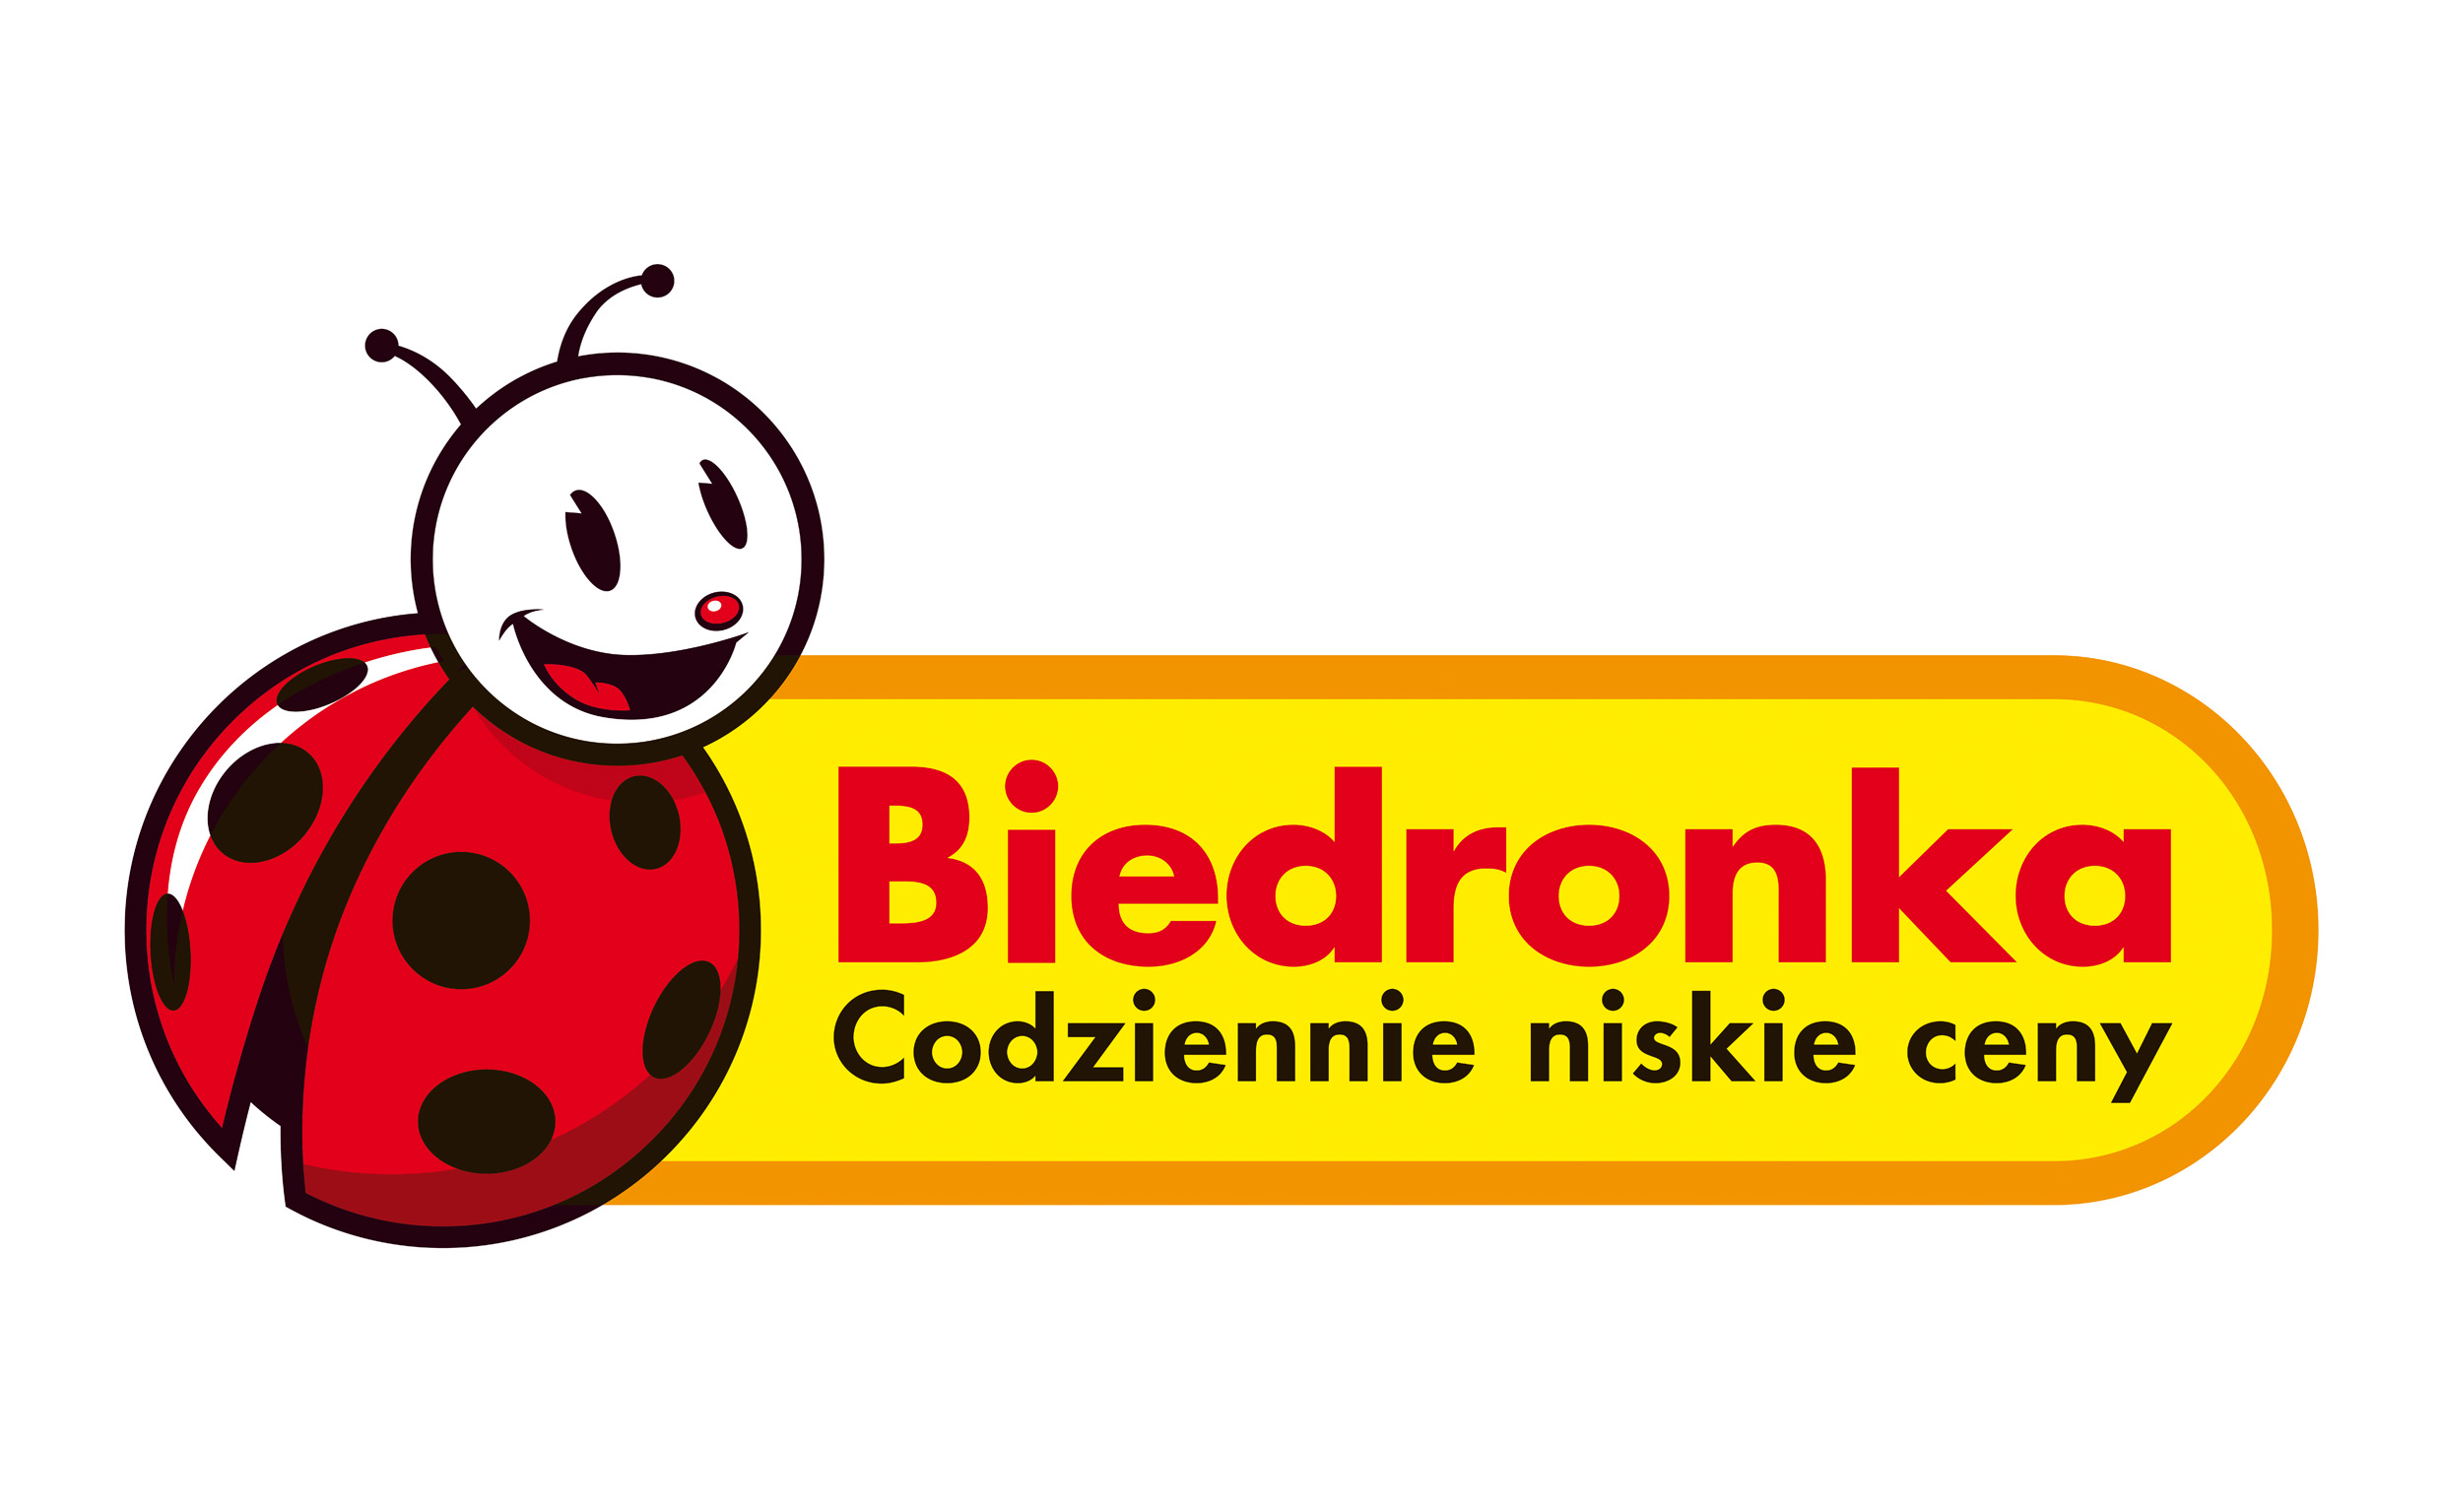 Sprzedaż like-for-like Biedronki w pierwszej połowie 2014 r. spadła o 1,2%